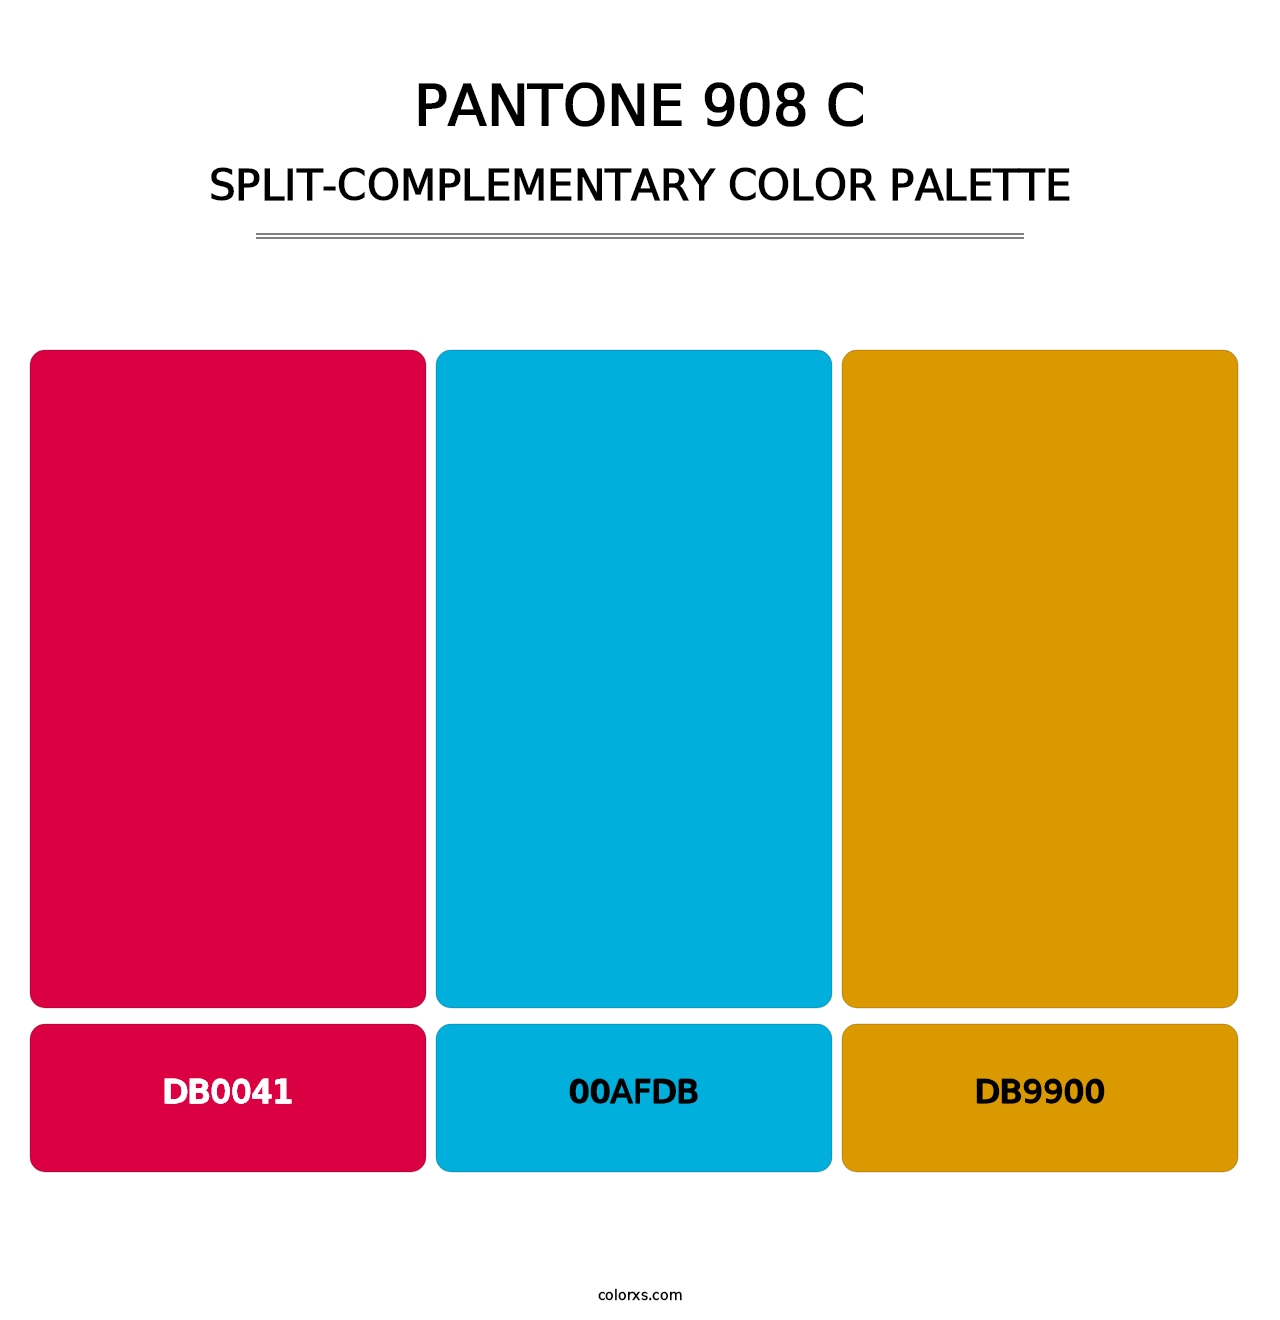 PANTONE 908 C - Split-Complementary Color Palette